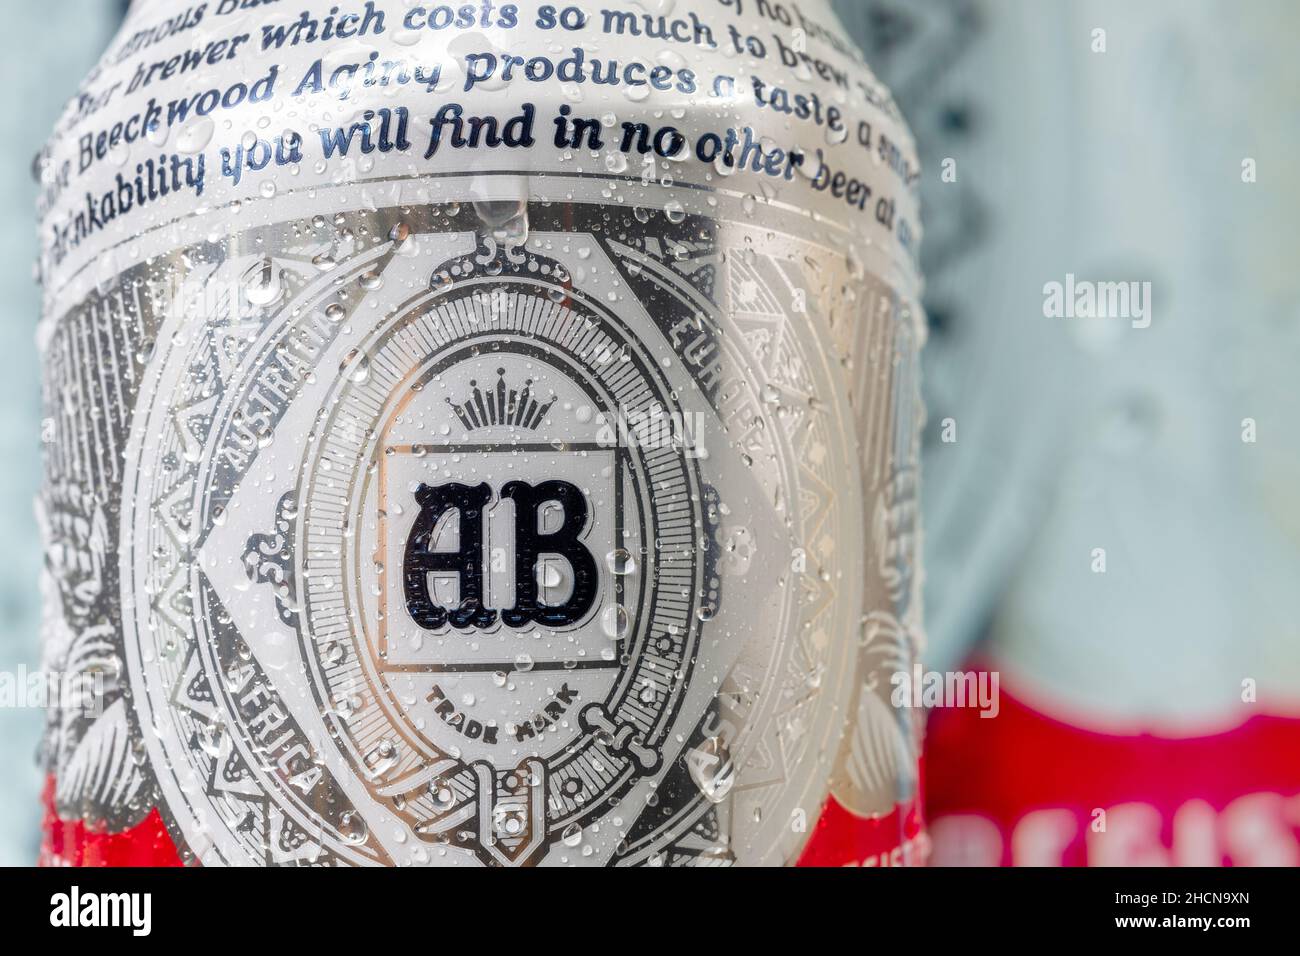 Etichetta disegno di una birra Budweiser Can.Dec. 30, 2021 Foto Stock